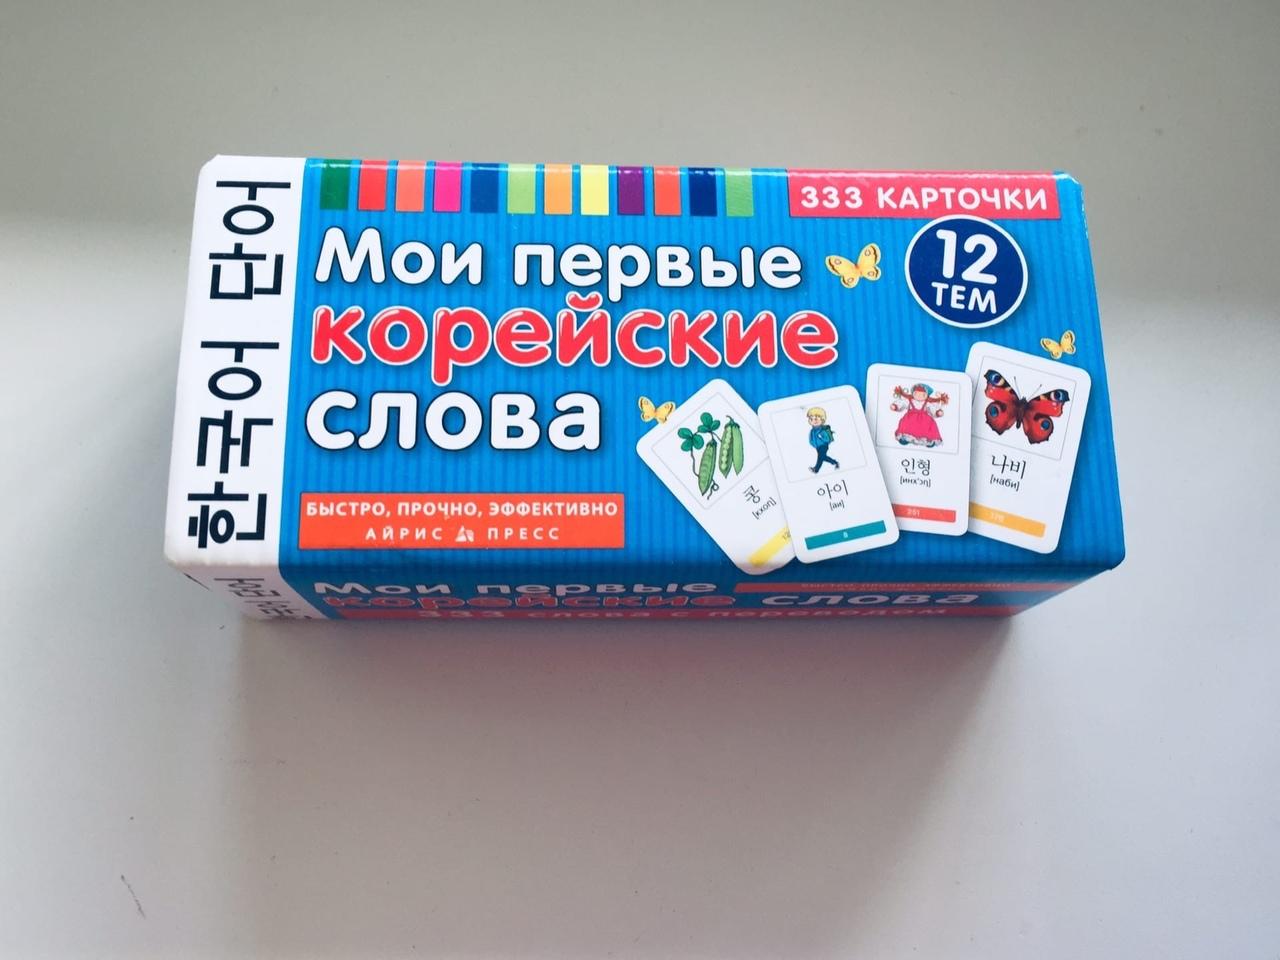 89250025370 Мои первые корейские слова. 333 карточки в Москве